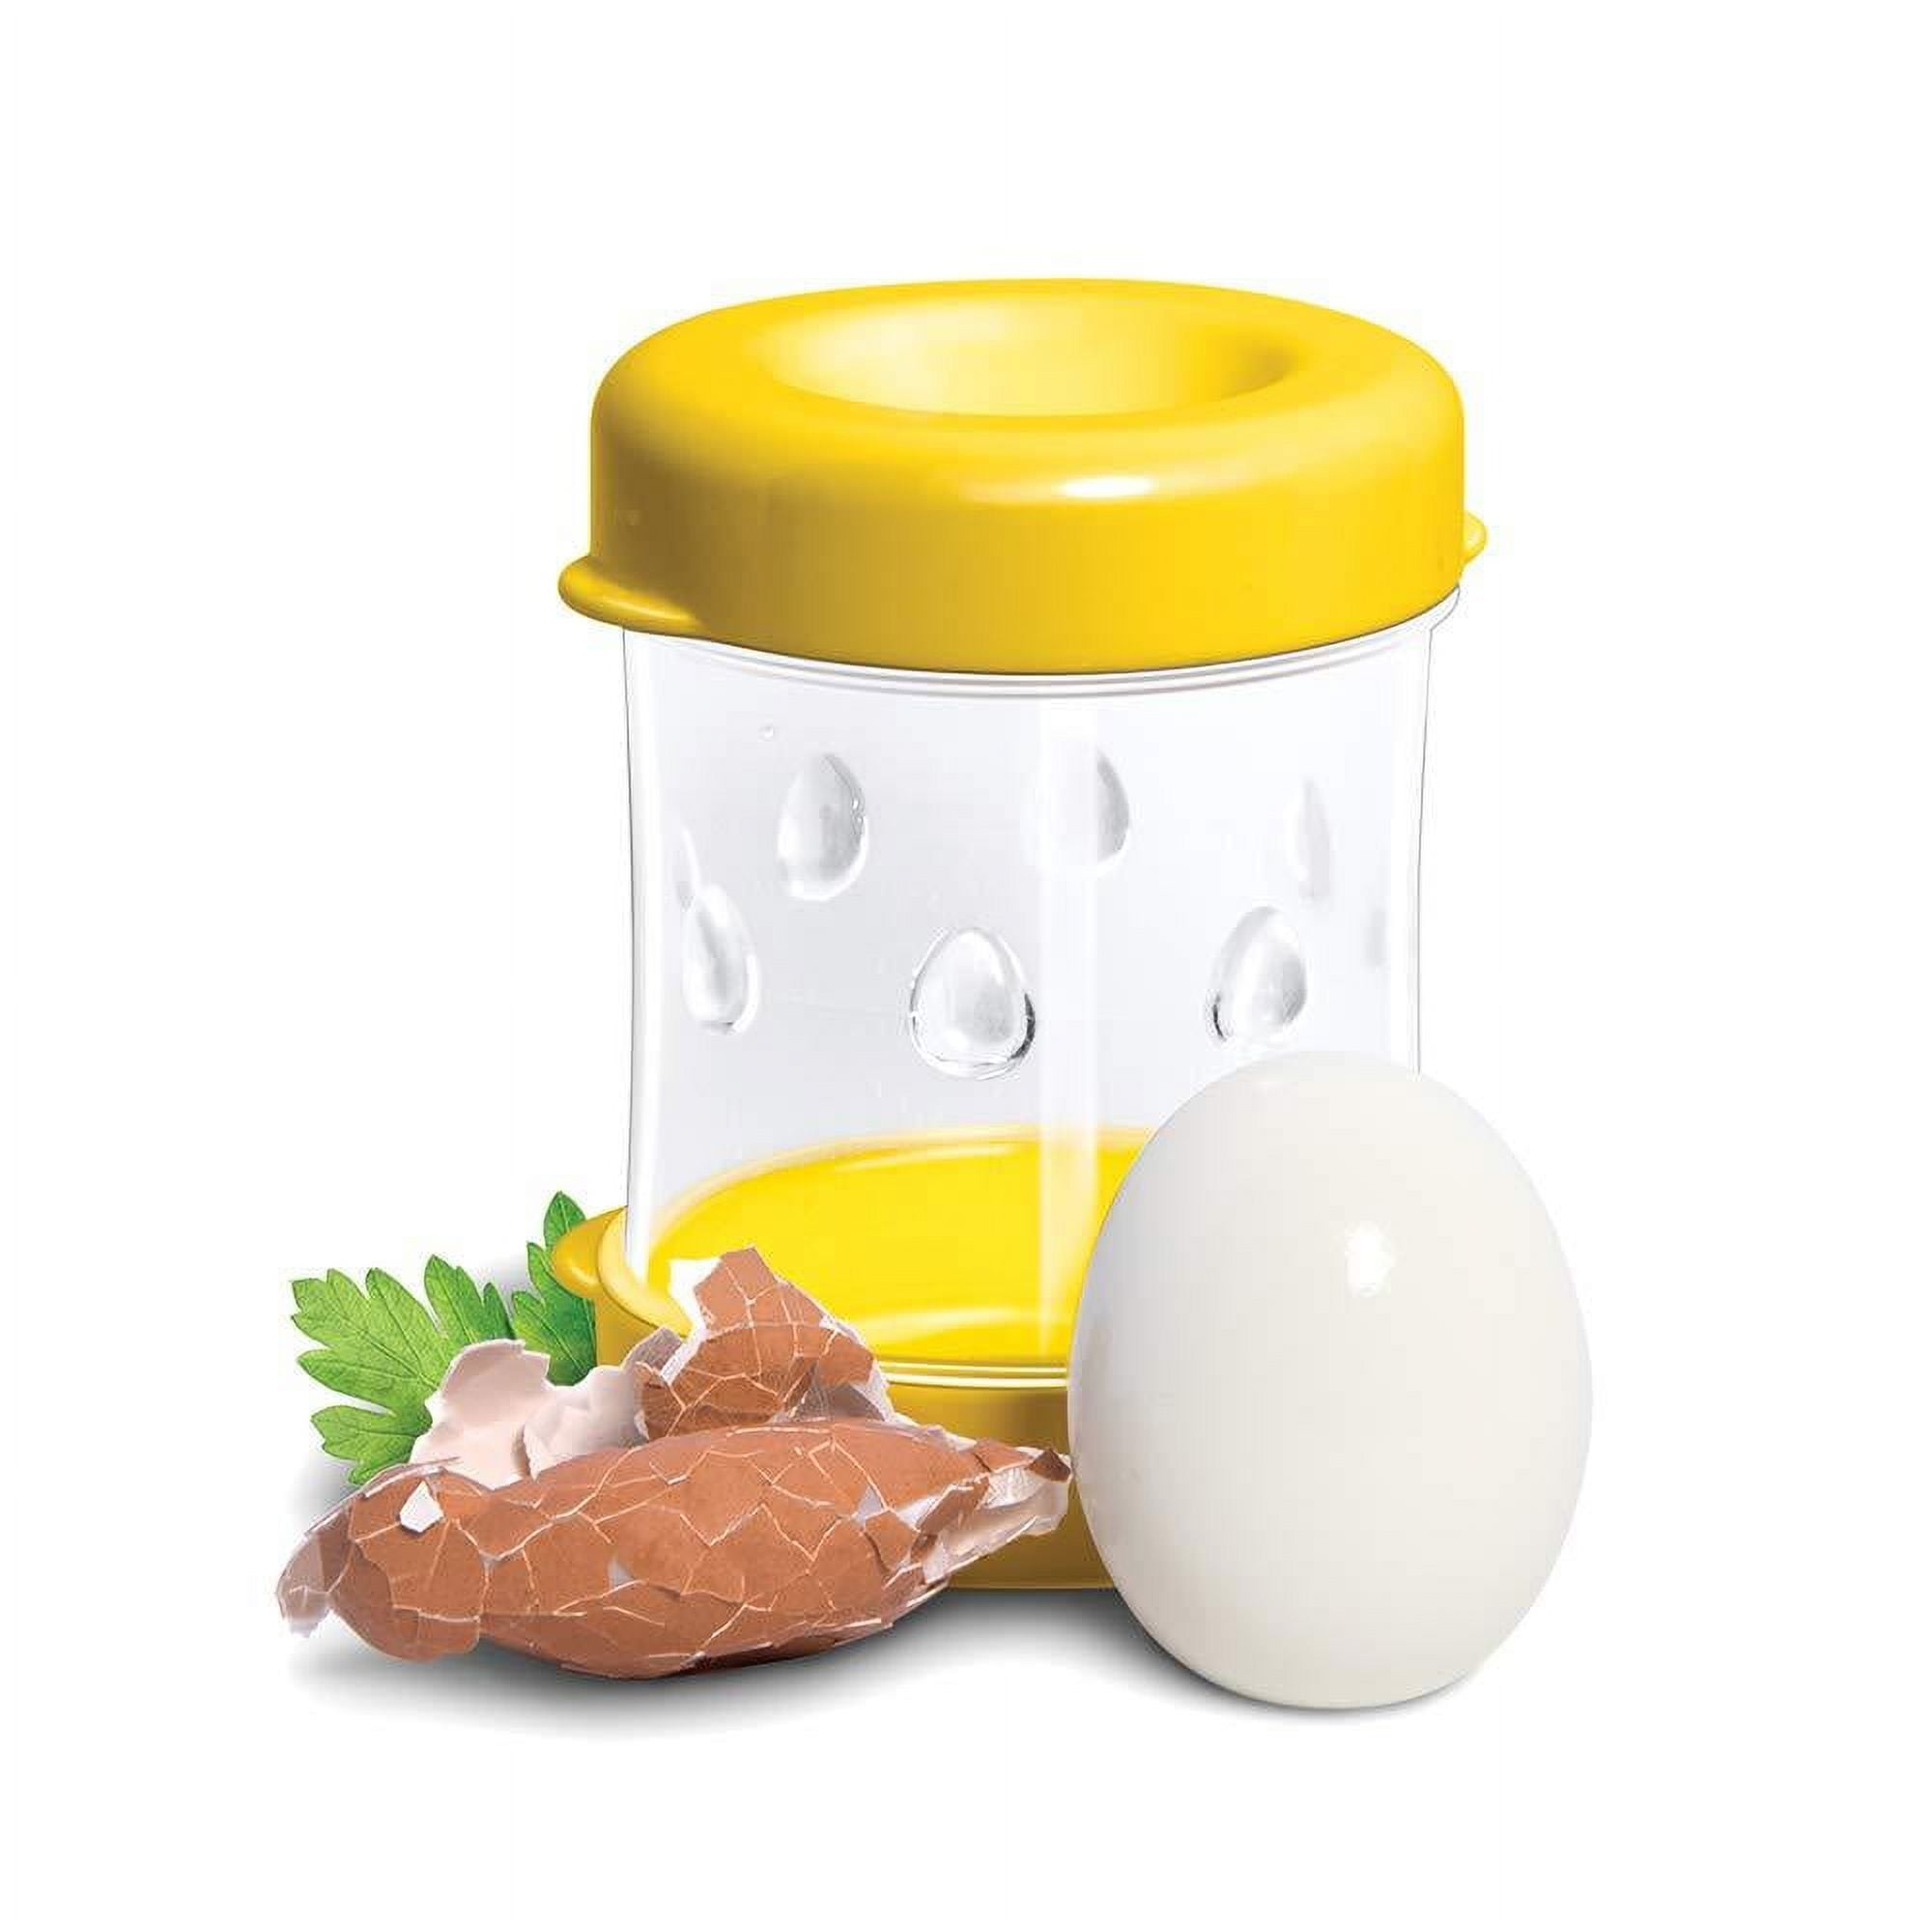 NEGG Egg Peeler, Yellow